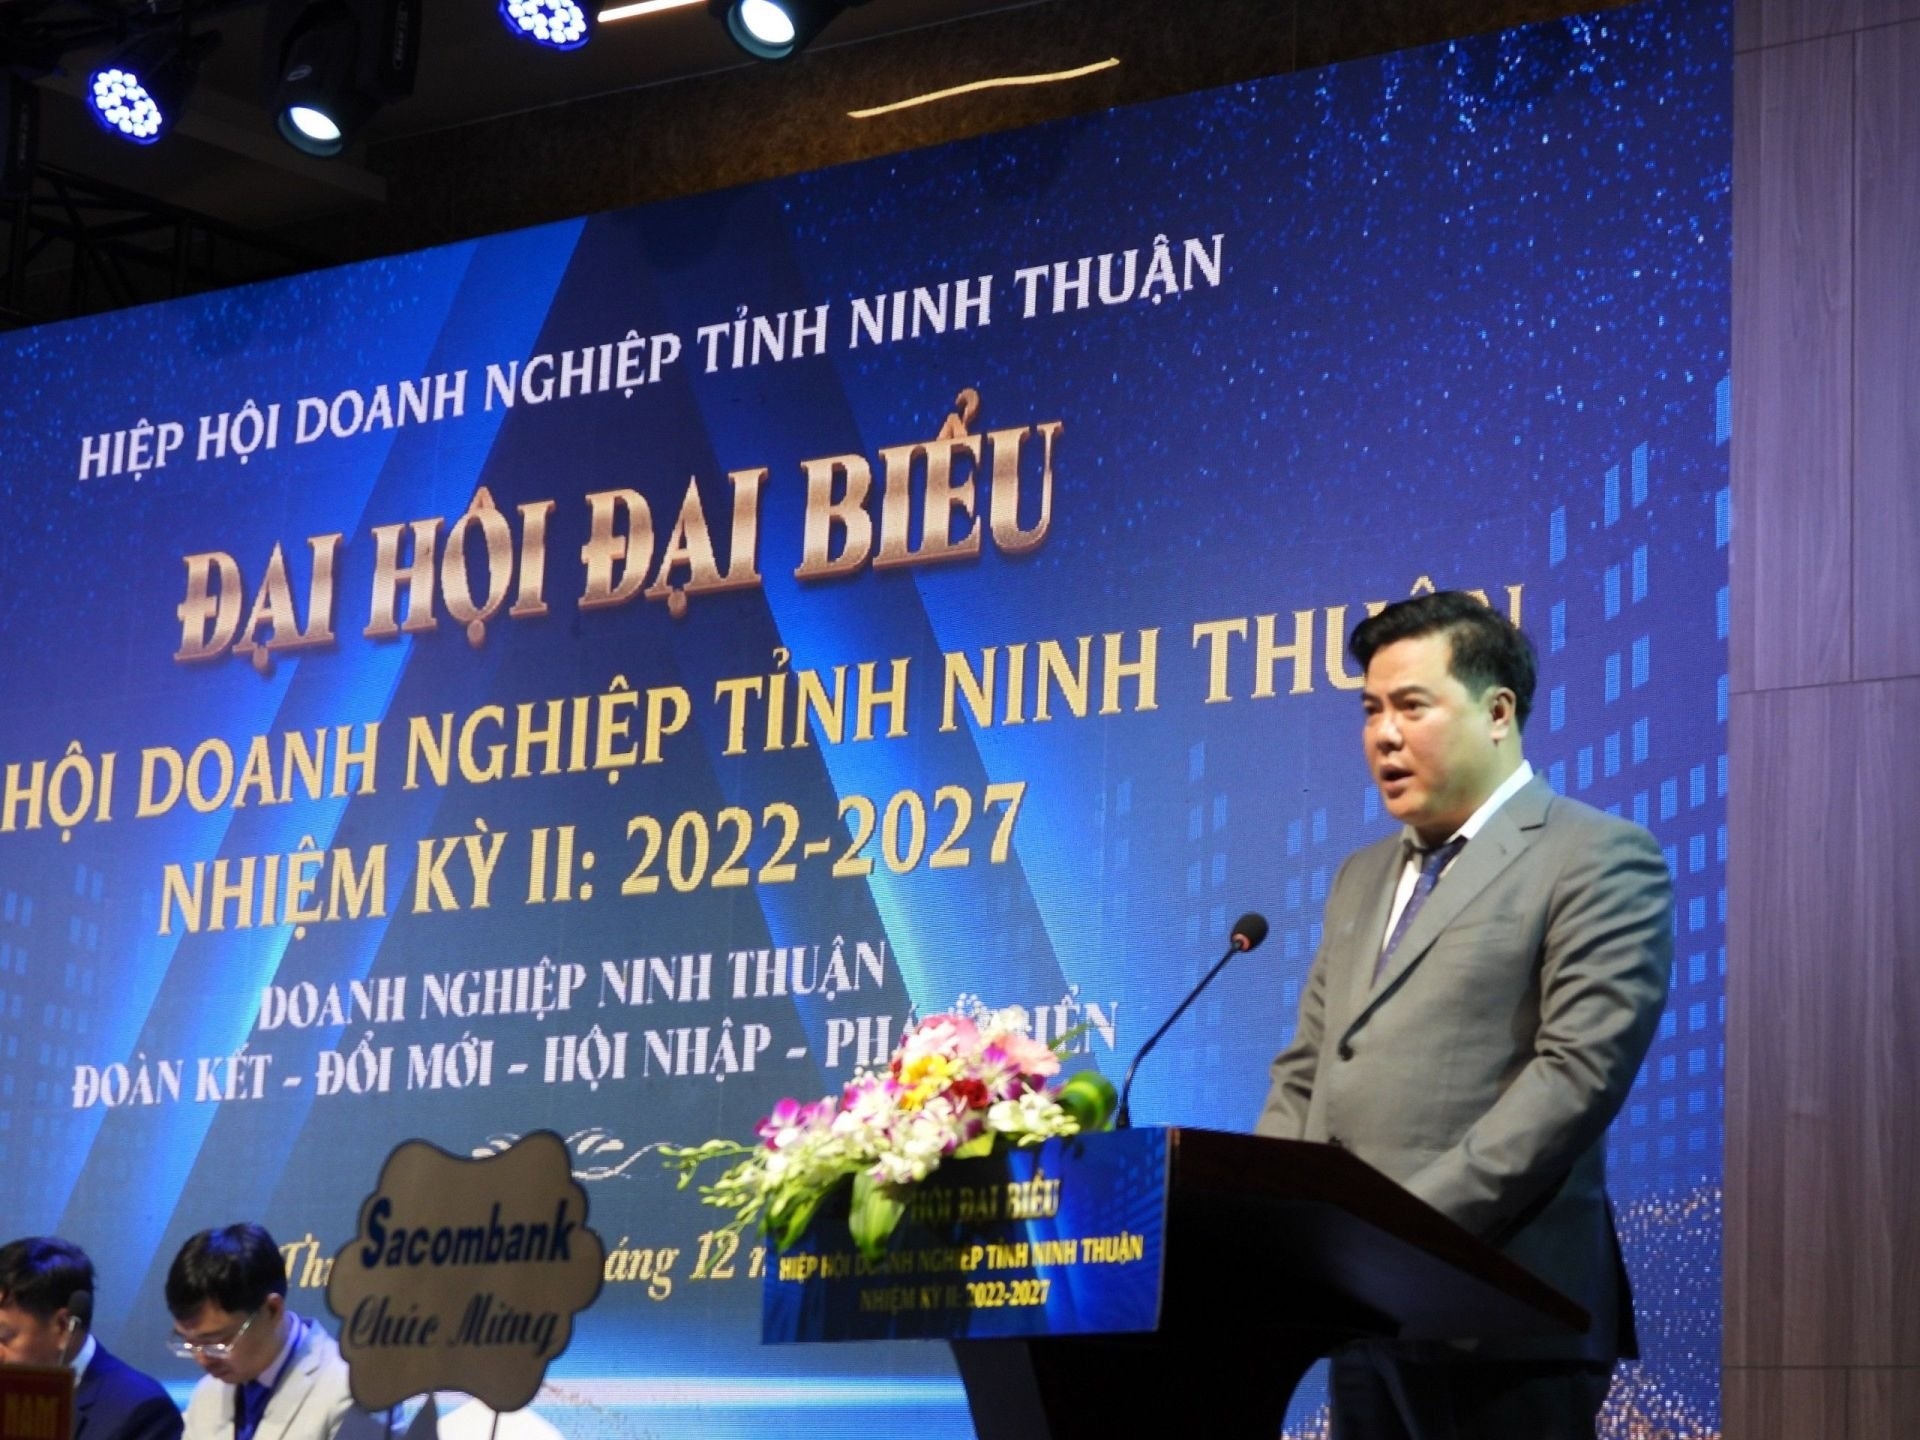 Ninh Thuận: Đại hội đại biểu Hiệp hội Doanh nghiệp nhiệm kỳ II năm 2022-2027